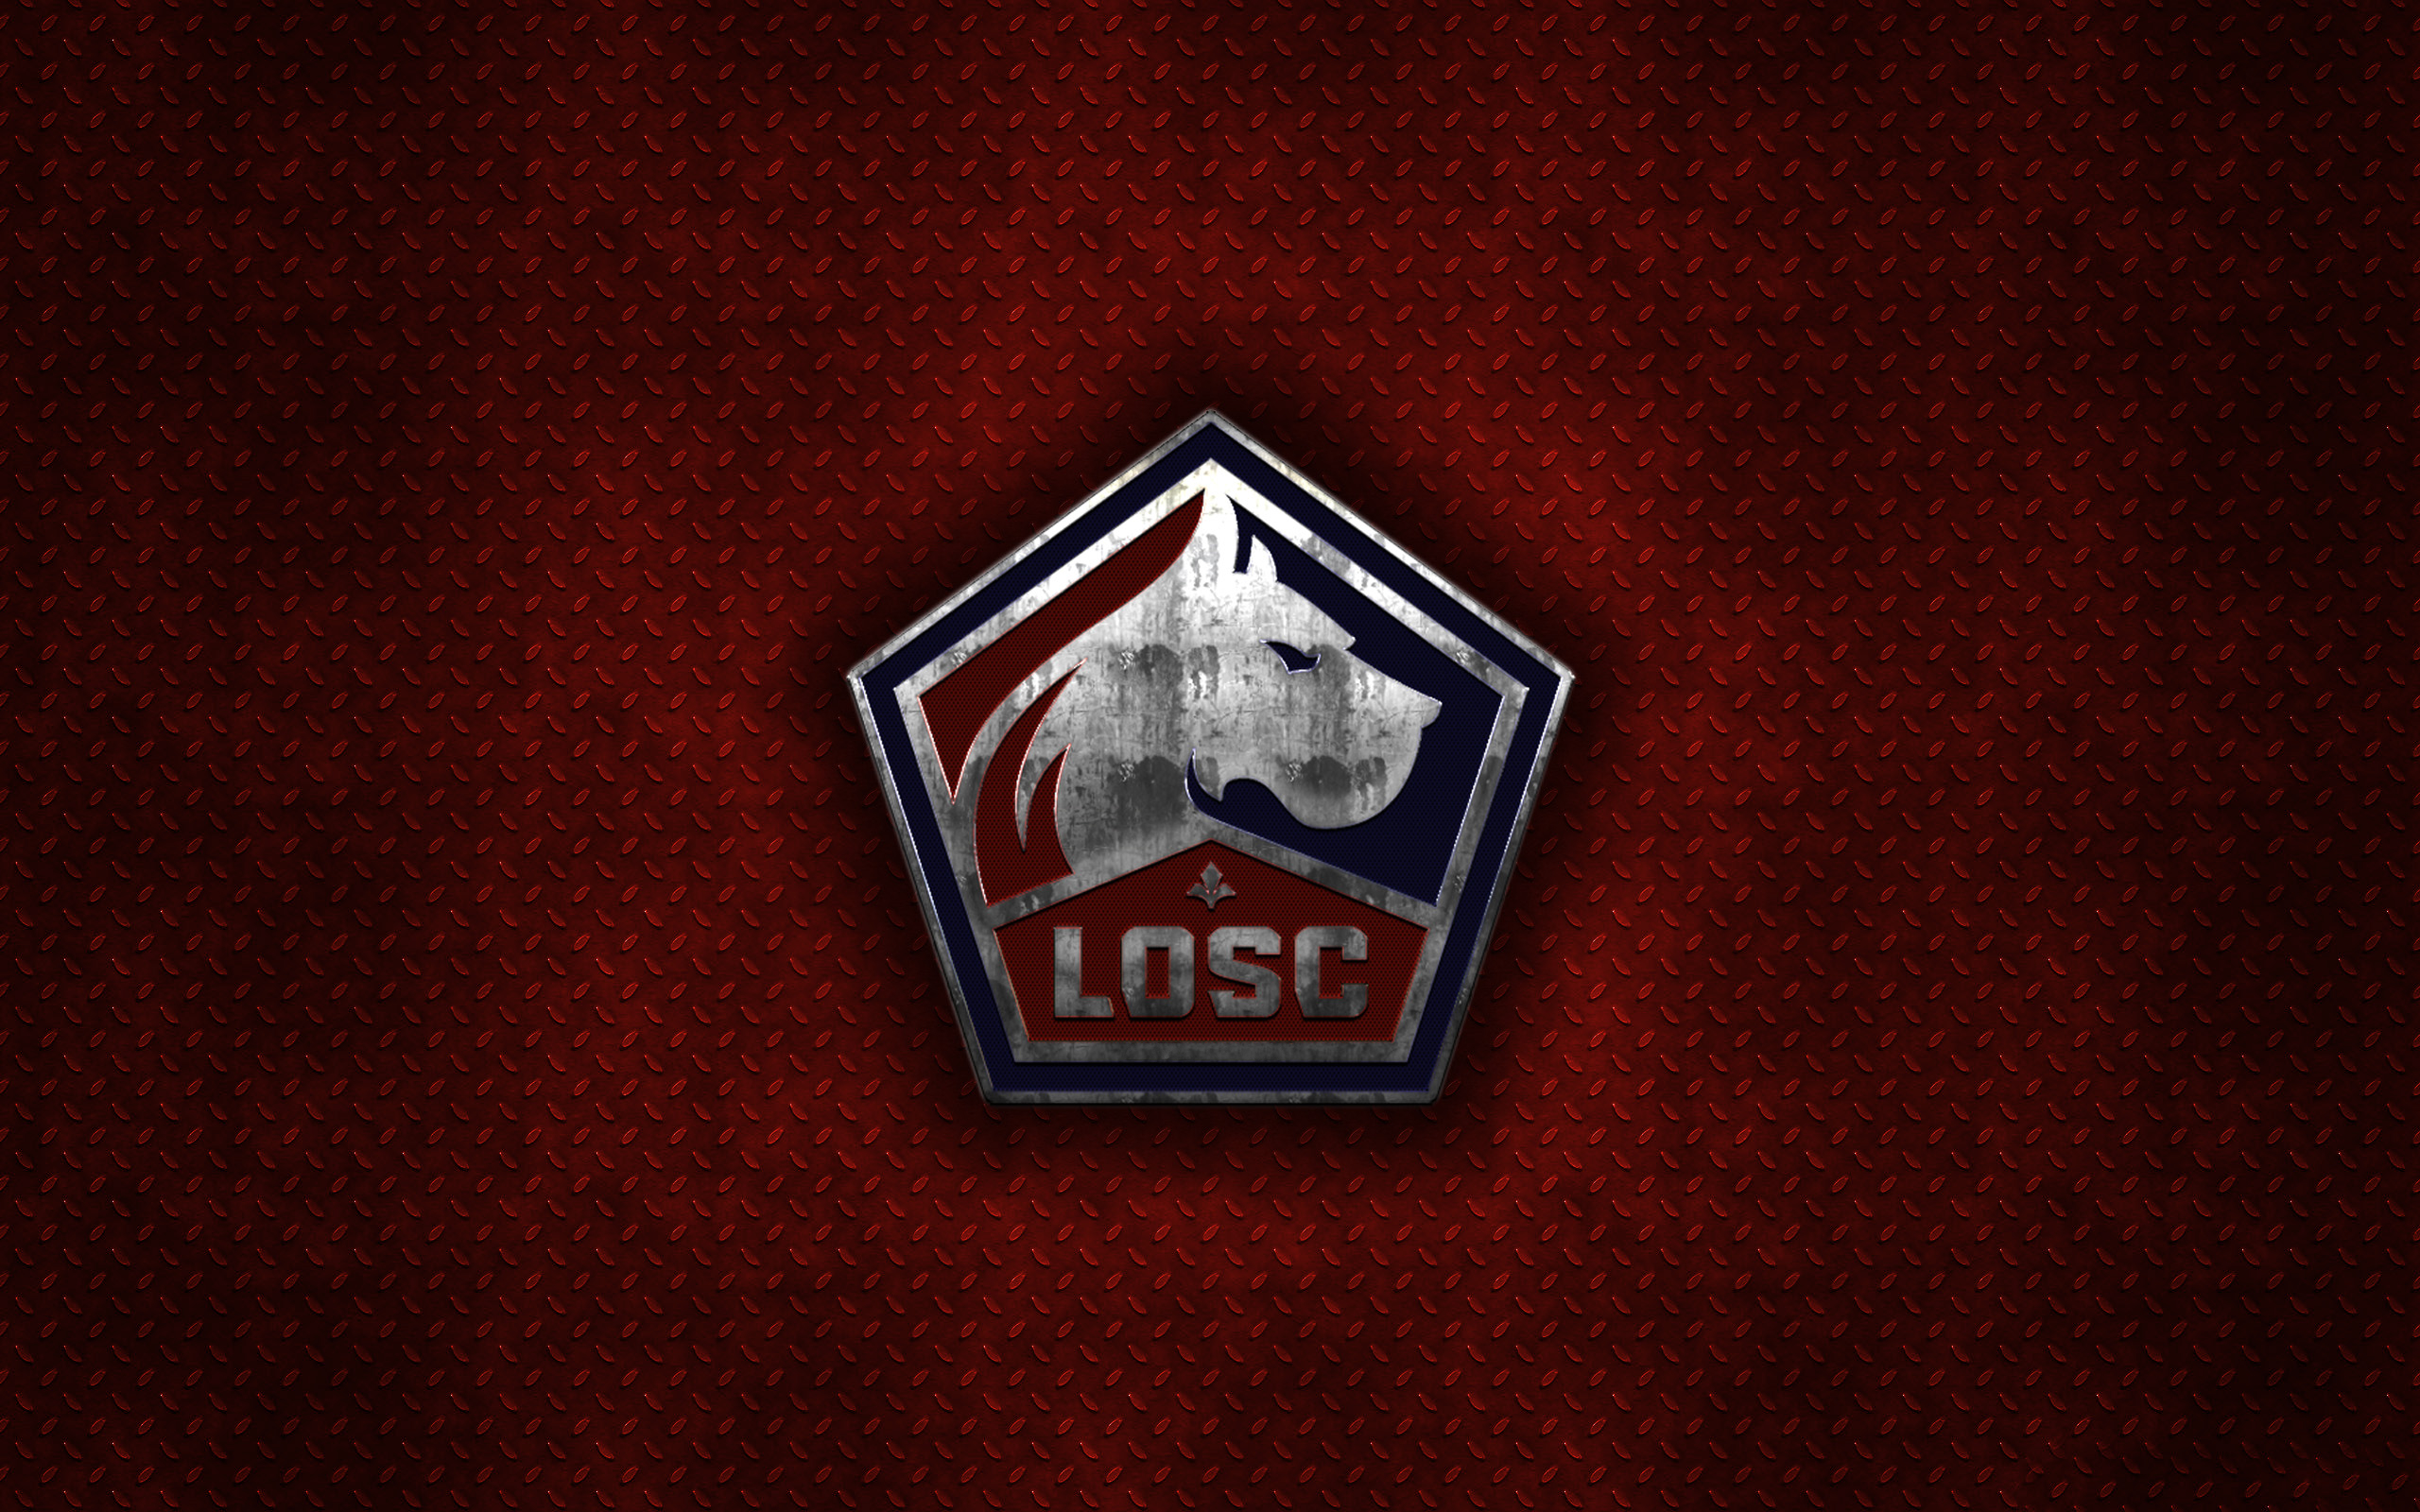 Emblem Lille Osc Logo Soccer 2560x1600